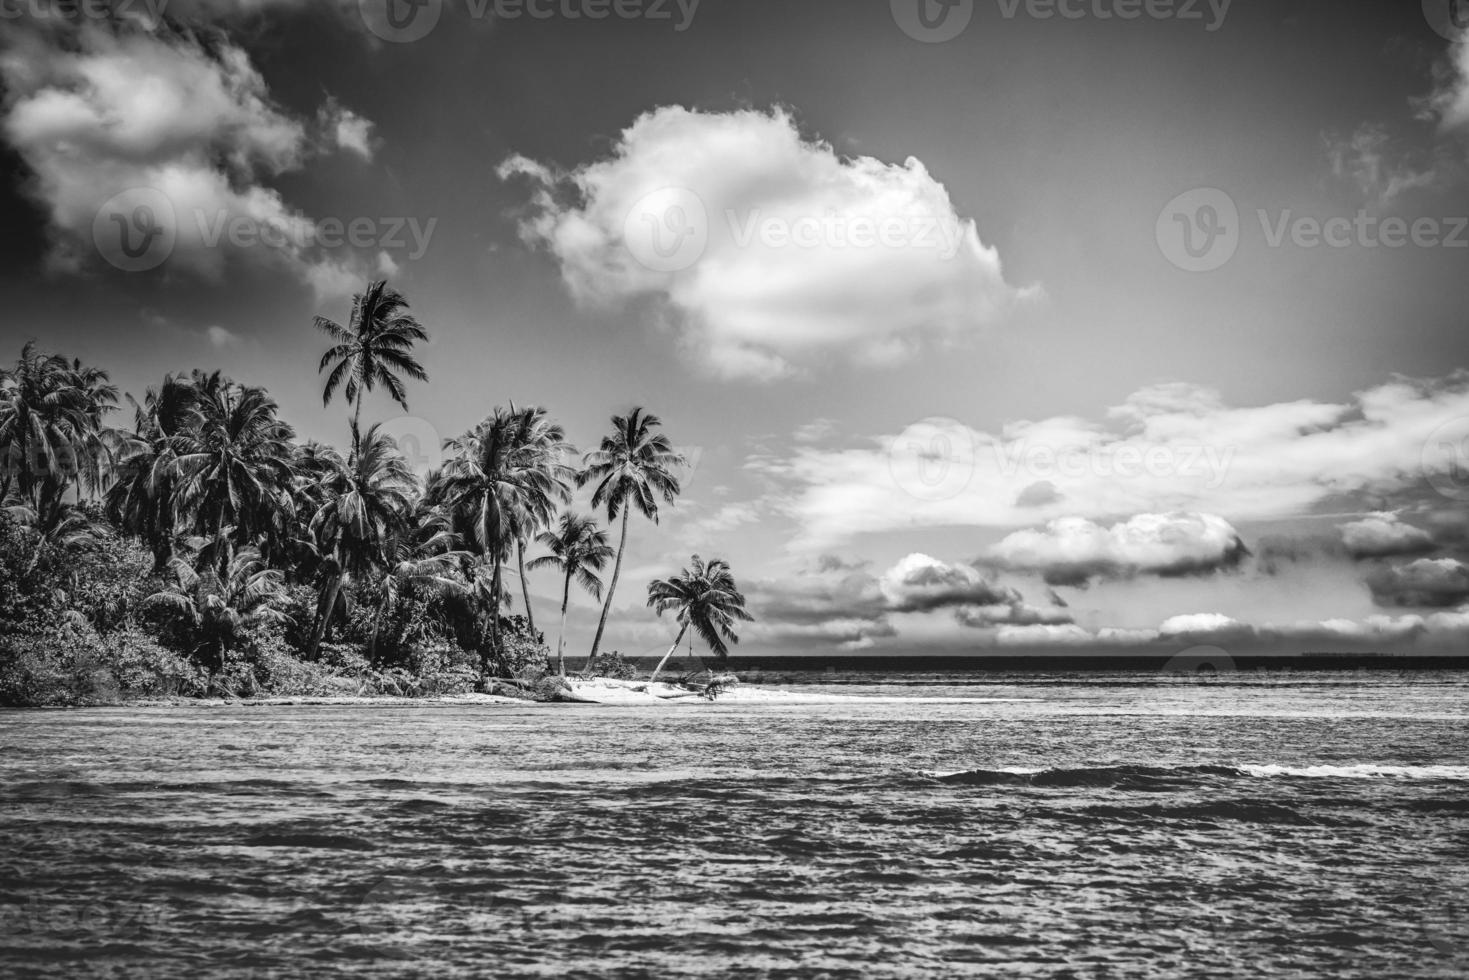 paisagem de praia tranquila em preto e branco. a dramática ilha paradisíaca monocromática inspira fundo de viagens de meditação. palmeiras areia branca céu escuro ondas artísticas relaxar costa. viagem mínima de verão foto